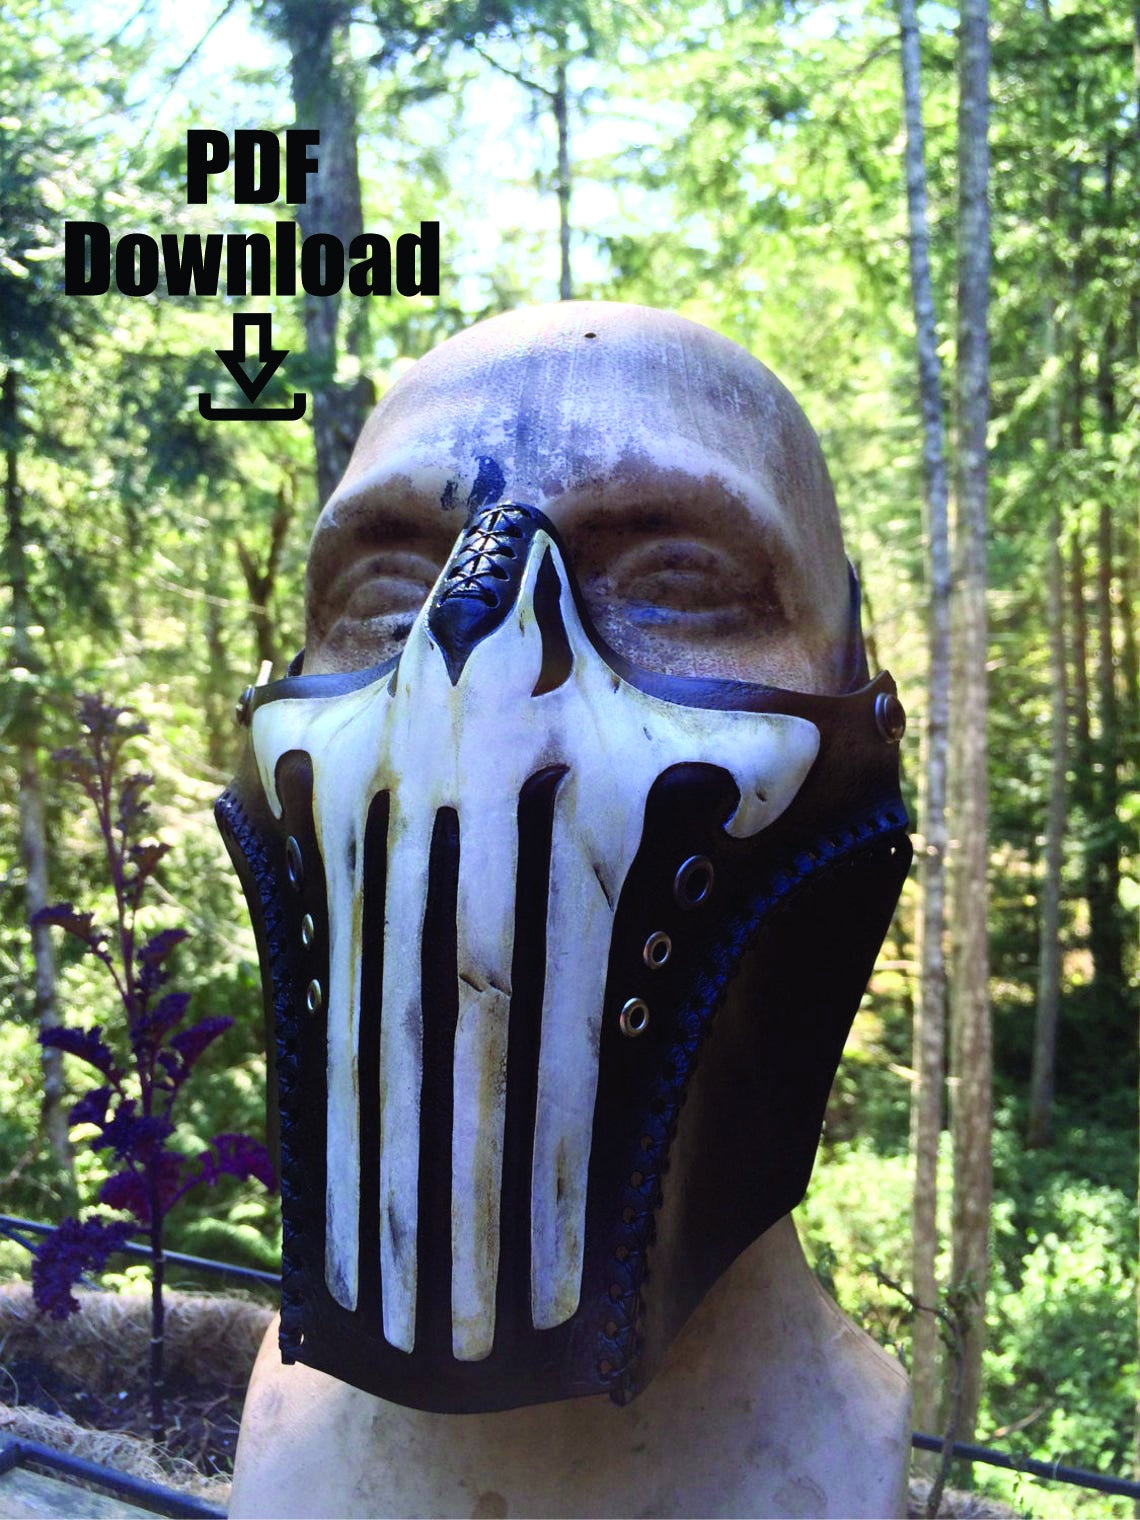 Invitere dæk Ordinere Leather skull mask PDF Template - Digital Leather half mask Pattern